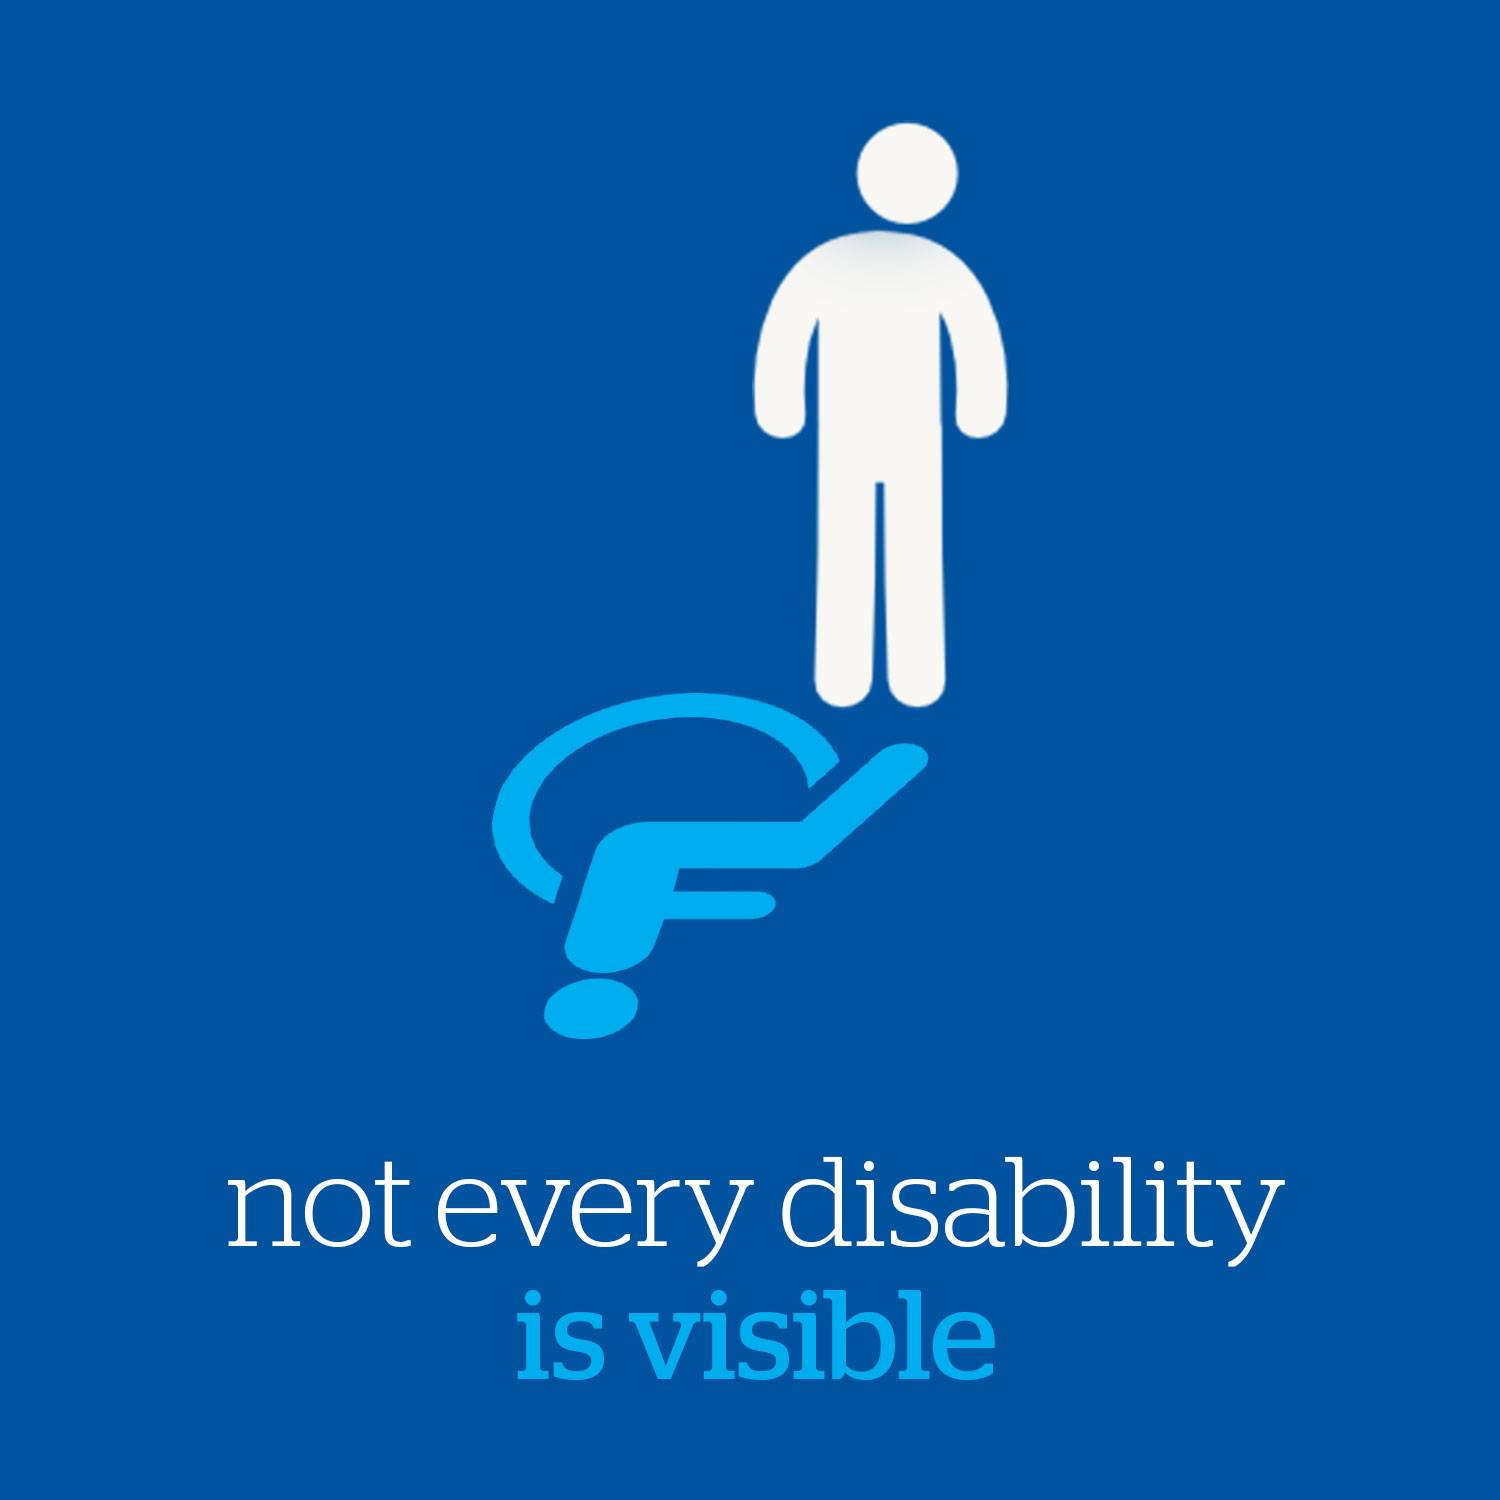 “Unsichtbare Behinderungen?” – Meinungen im Netz